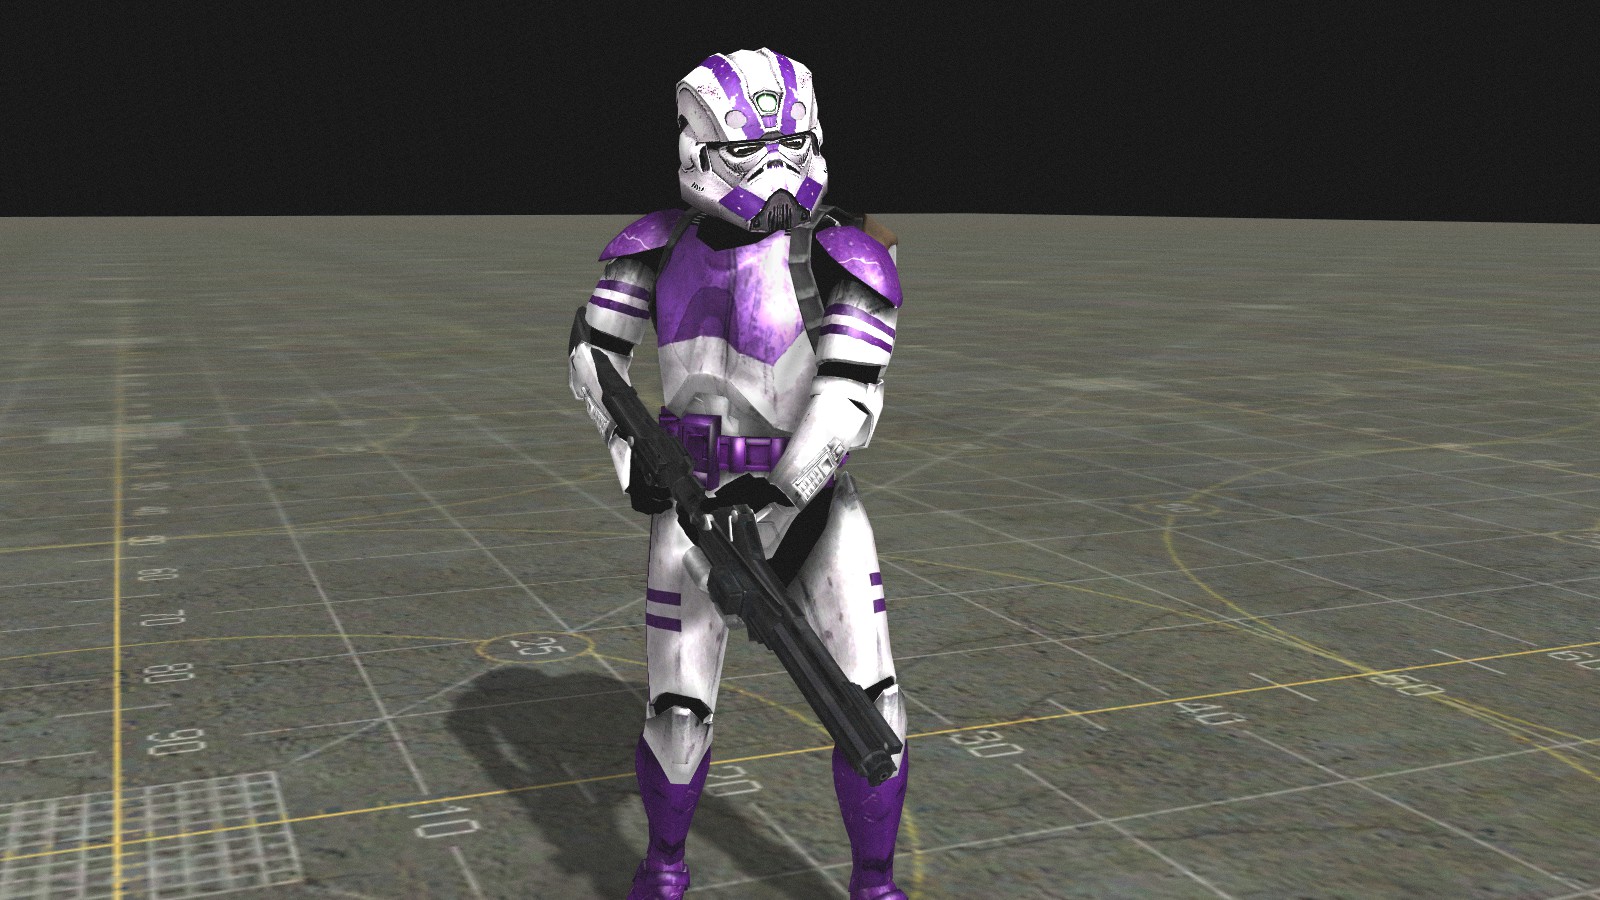 Clone trooper engineer